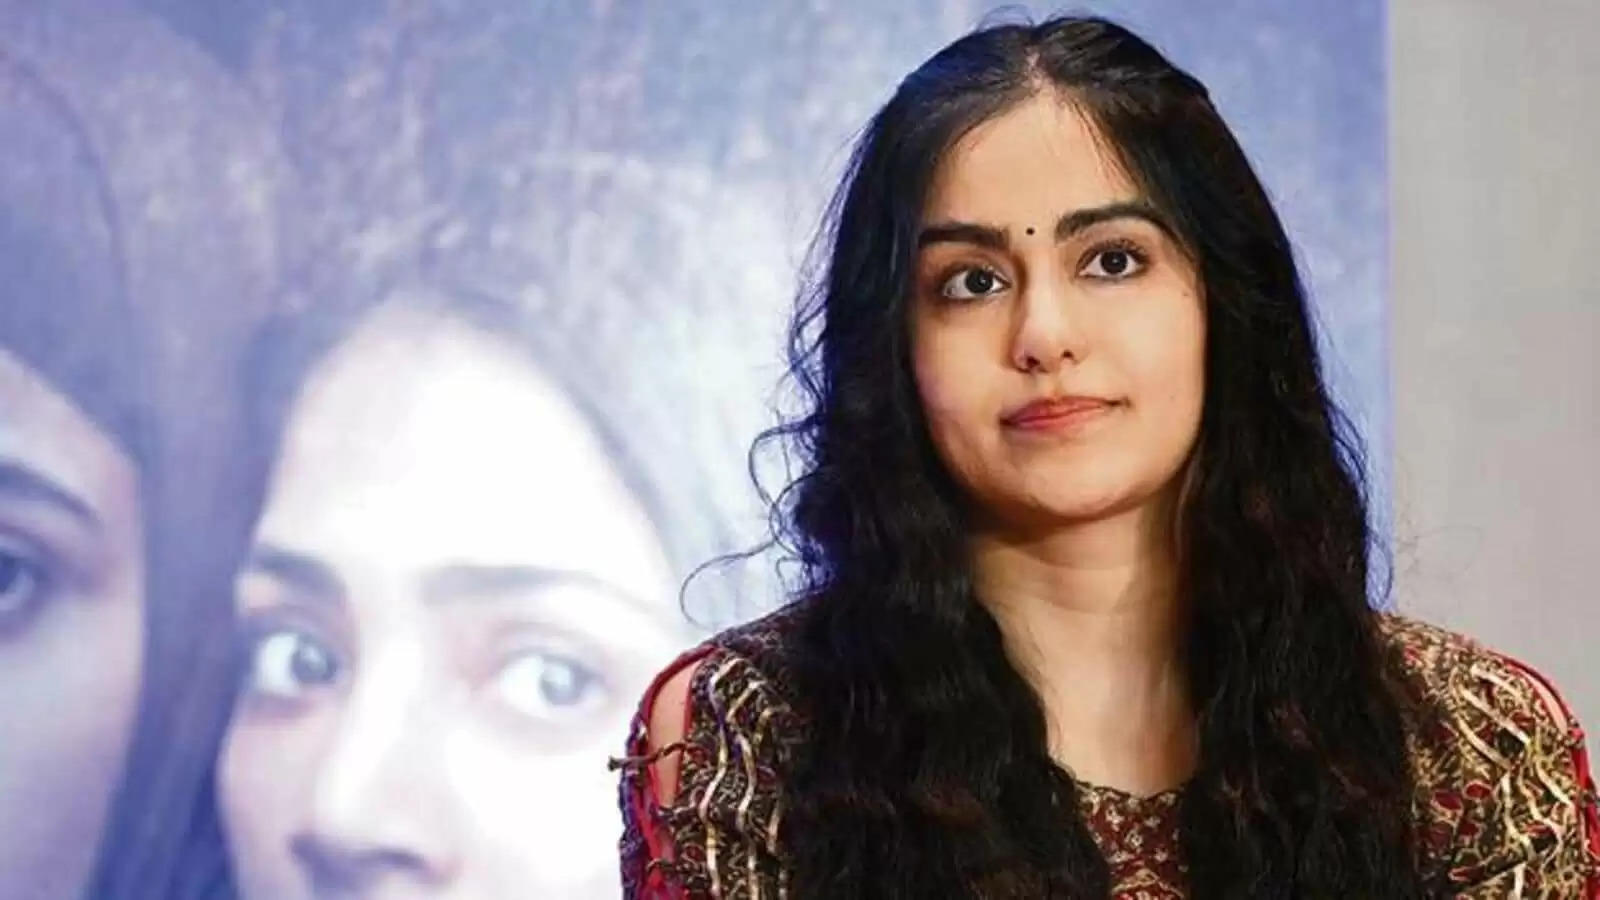 फोन नंबर लीक करने की धमकी पर 'द केरल स्टोरी' की अभिनेत्री अदा शर्मा ने तोड़ी चुप्पी